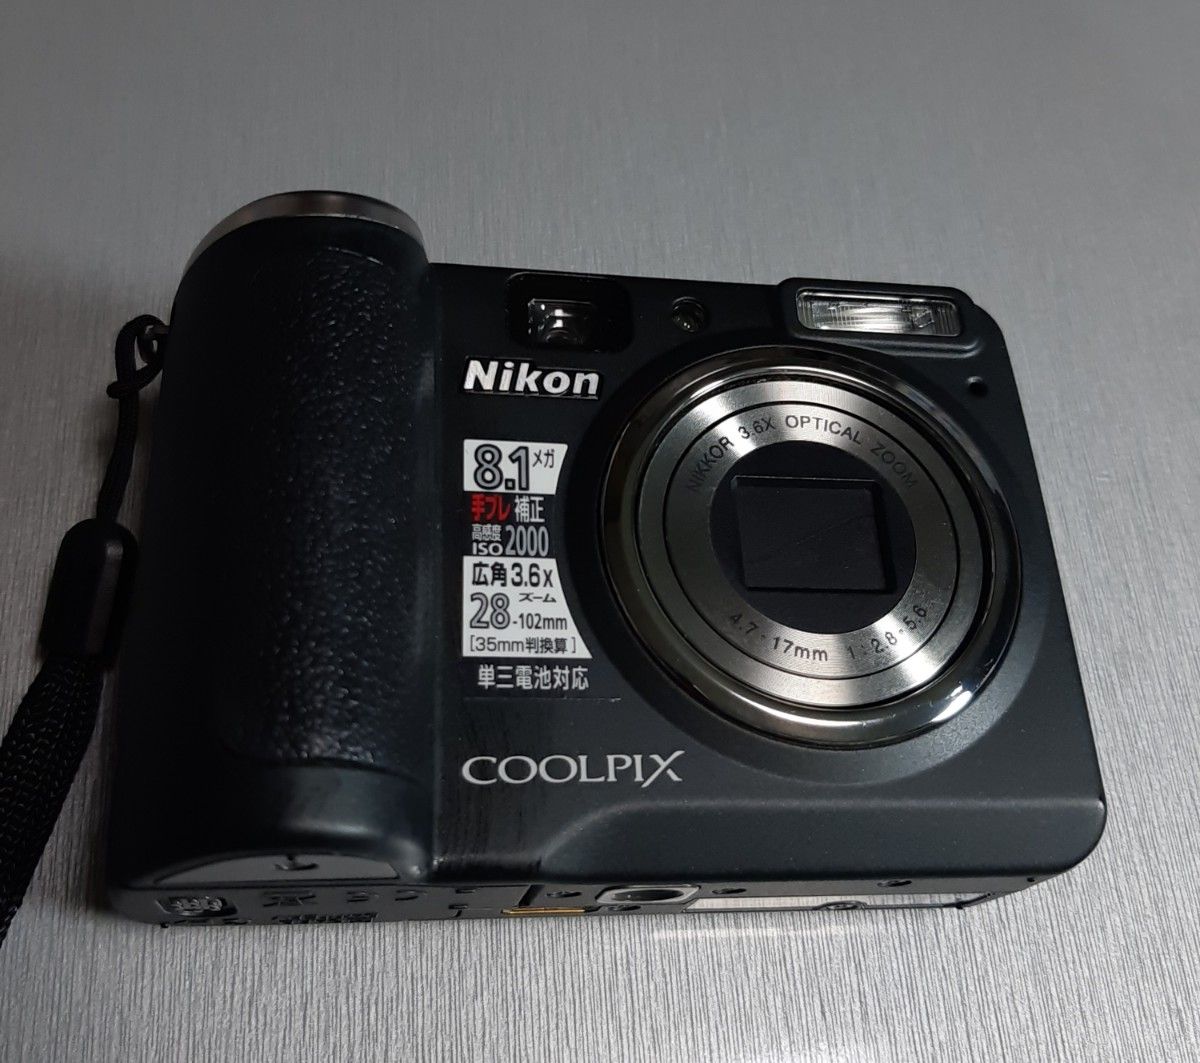 Nikon 　COOLPIX  P50  ニコン クールピクス　P50  デジタルカメラ  コンパクトデジタルカメラ  デジカメ